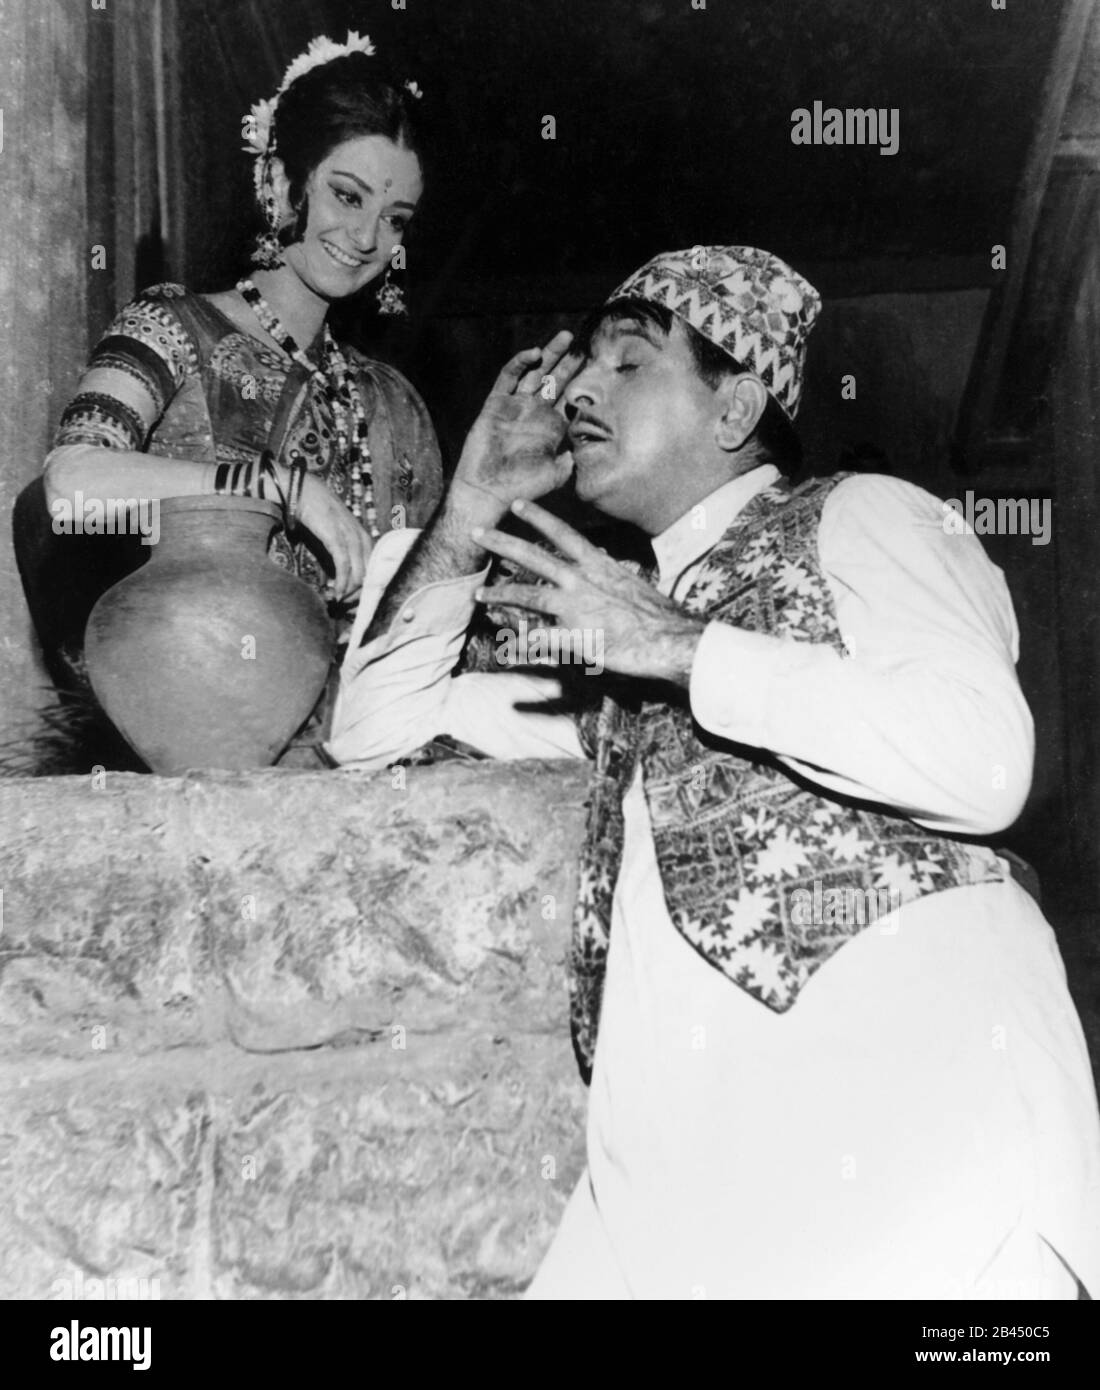 Dilip Kumar, Mohammed Yusuf Khan, attore indiano, il Re della tragedia, il primo Khan, attrice, Saira Banu, Saira Bano, India, Asia, vecchia immagine del 1900 Foto Stock